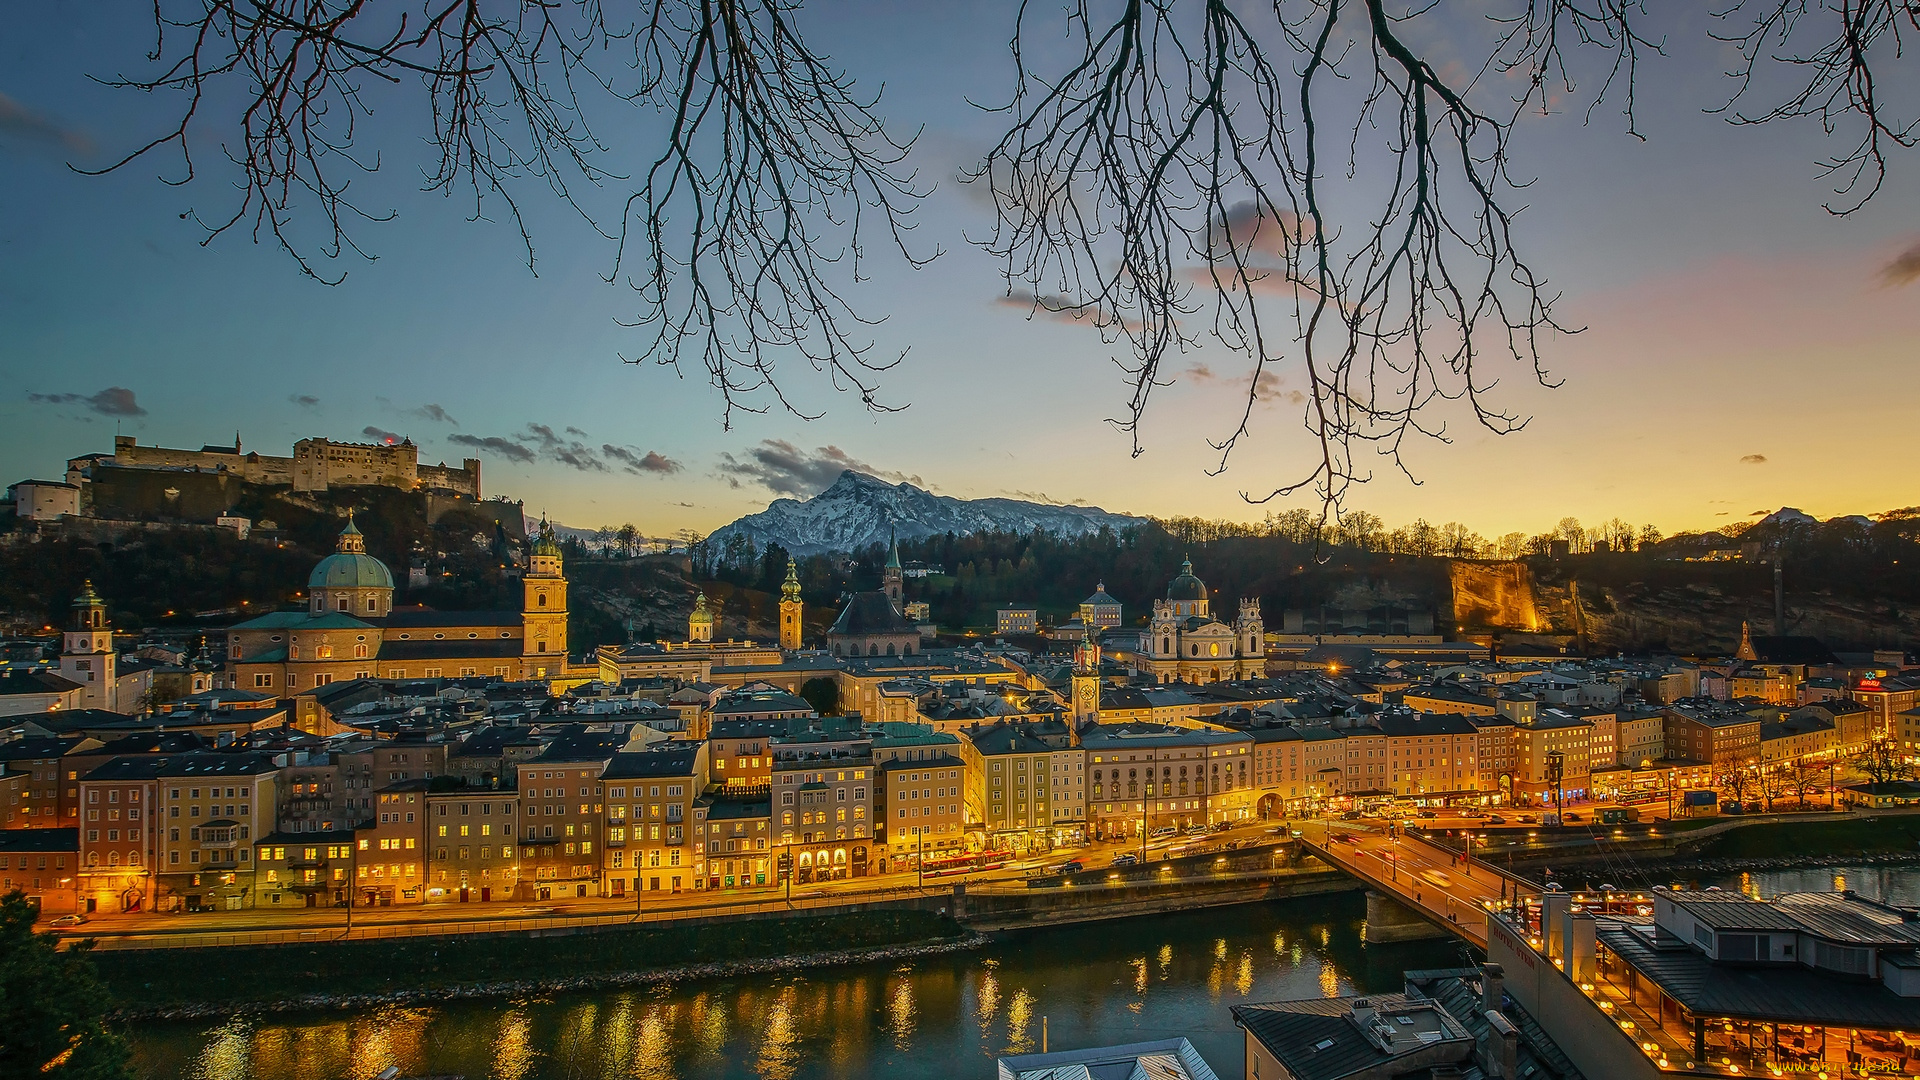 австрия, города, -, панорамы, водоем, мост, ветки, фонари, здания, гора